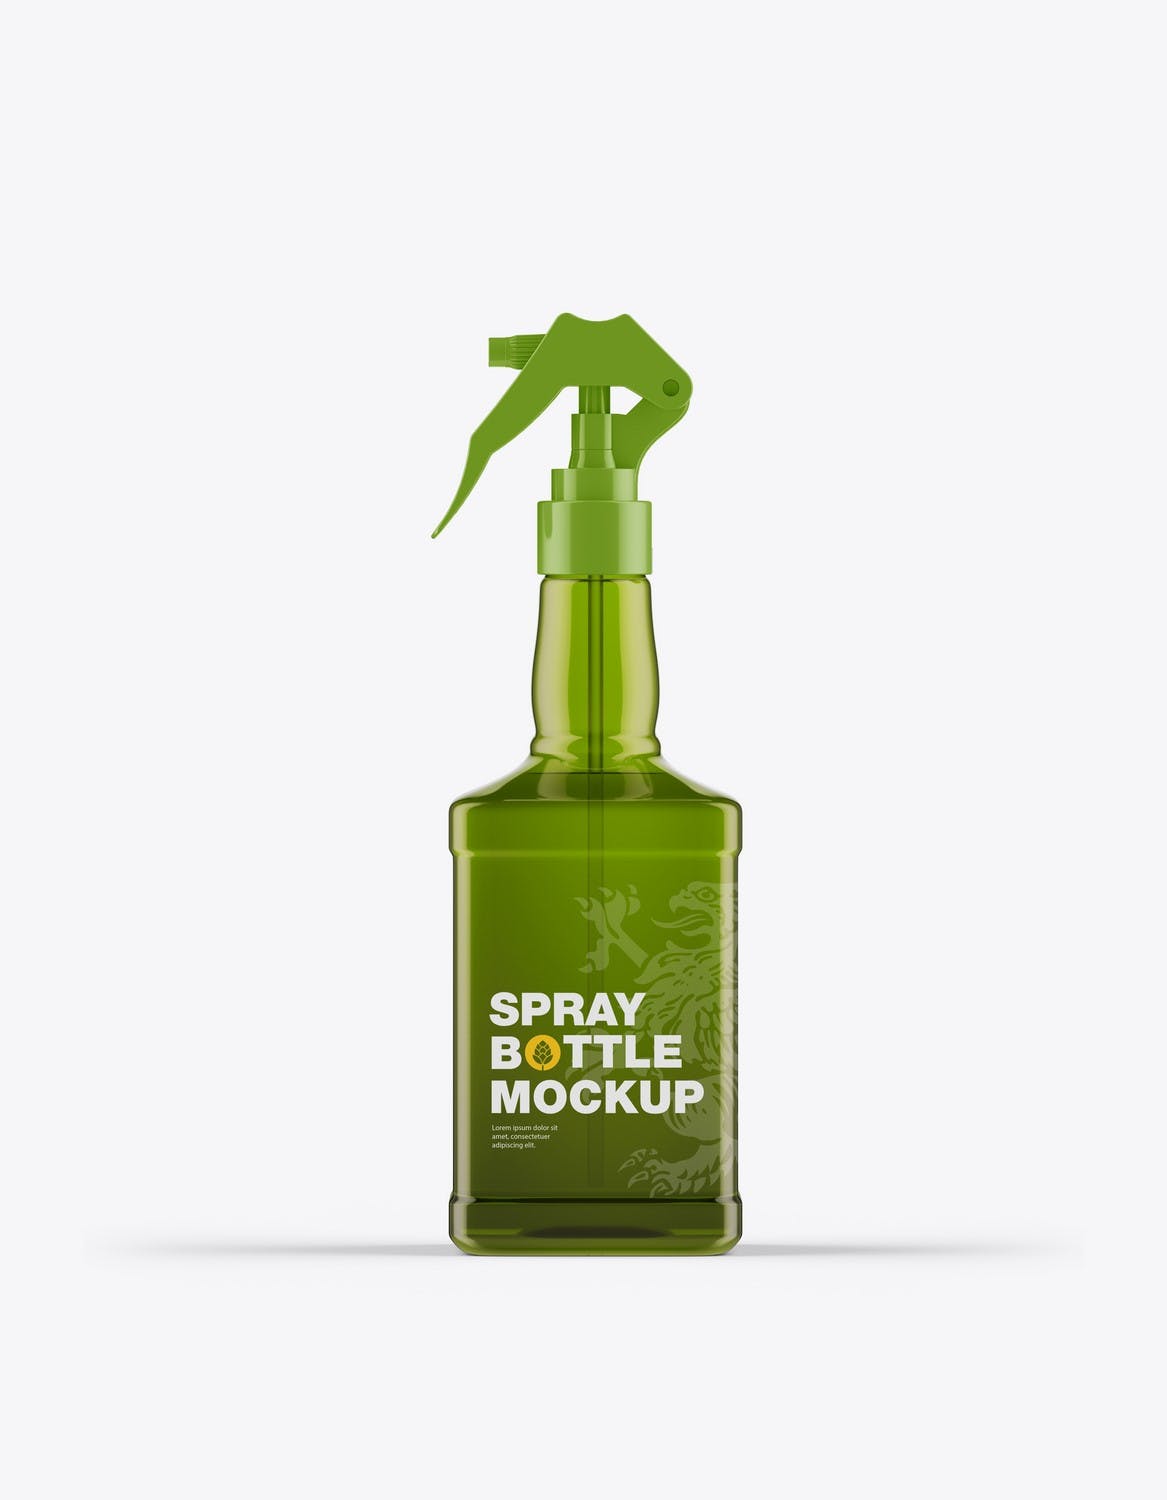 玻璃喷雾瓶包装设计样机 Pack Glass Spray Bottles Mockup 样机素材 第4张